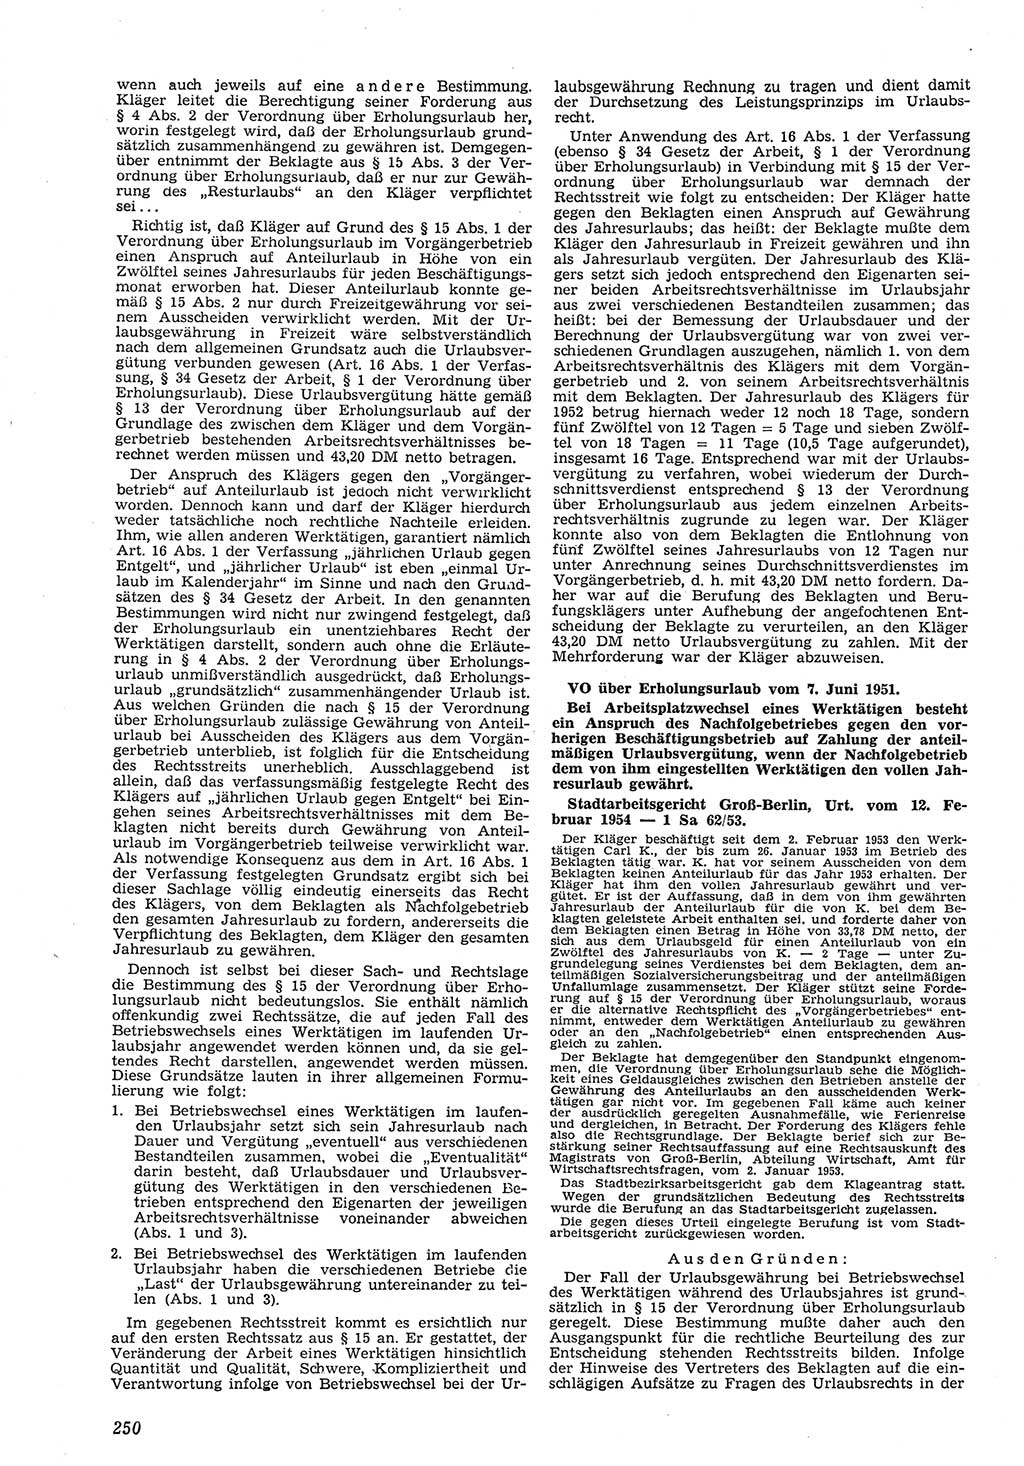 Neue Justiz (NJ), Zeitschrift für Recht und Rechtswissenschaft [Deutsche Demokratische Republik (DDR)], 8. Jahrgang 1954, Seite 250 (NJ DDR 1954, S. 250)